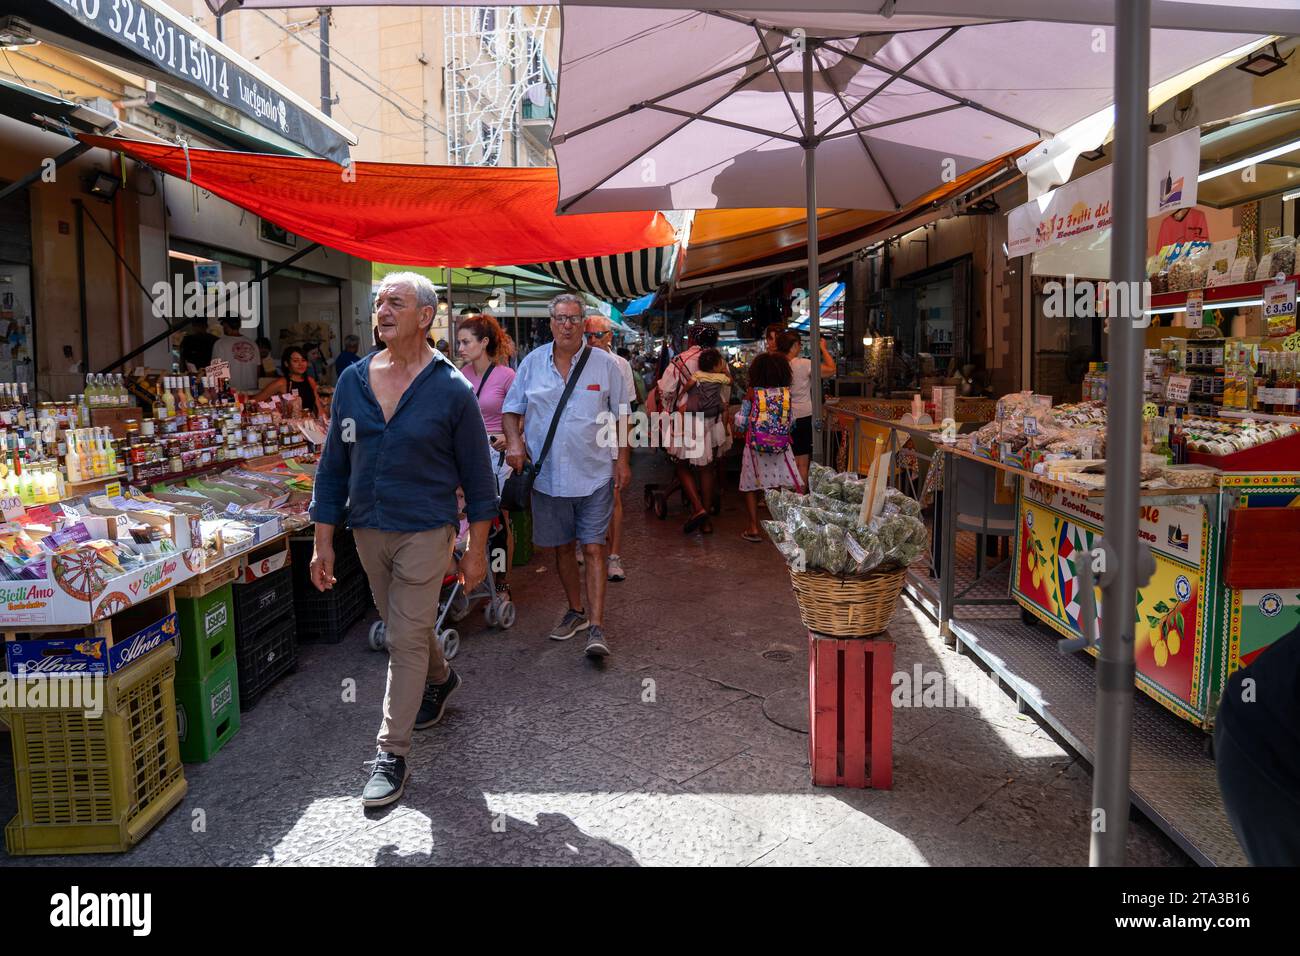 Mercato di Ballaro a Palermo, Sicilia Foto Stock